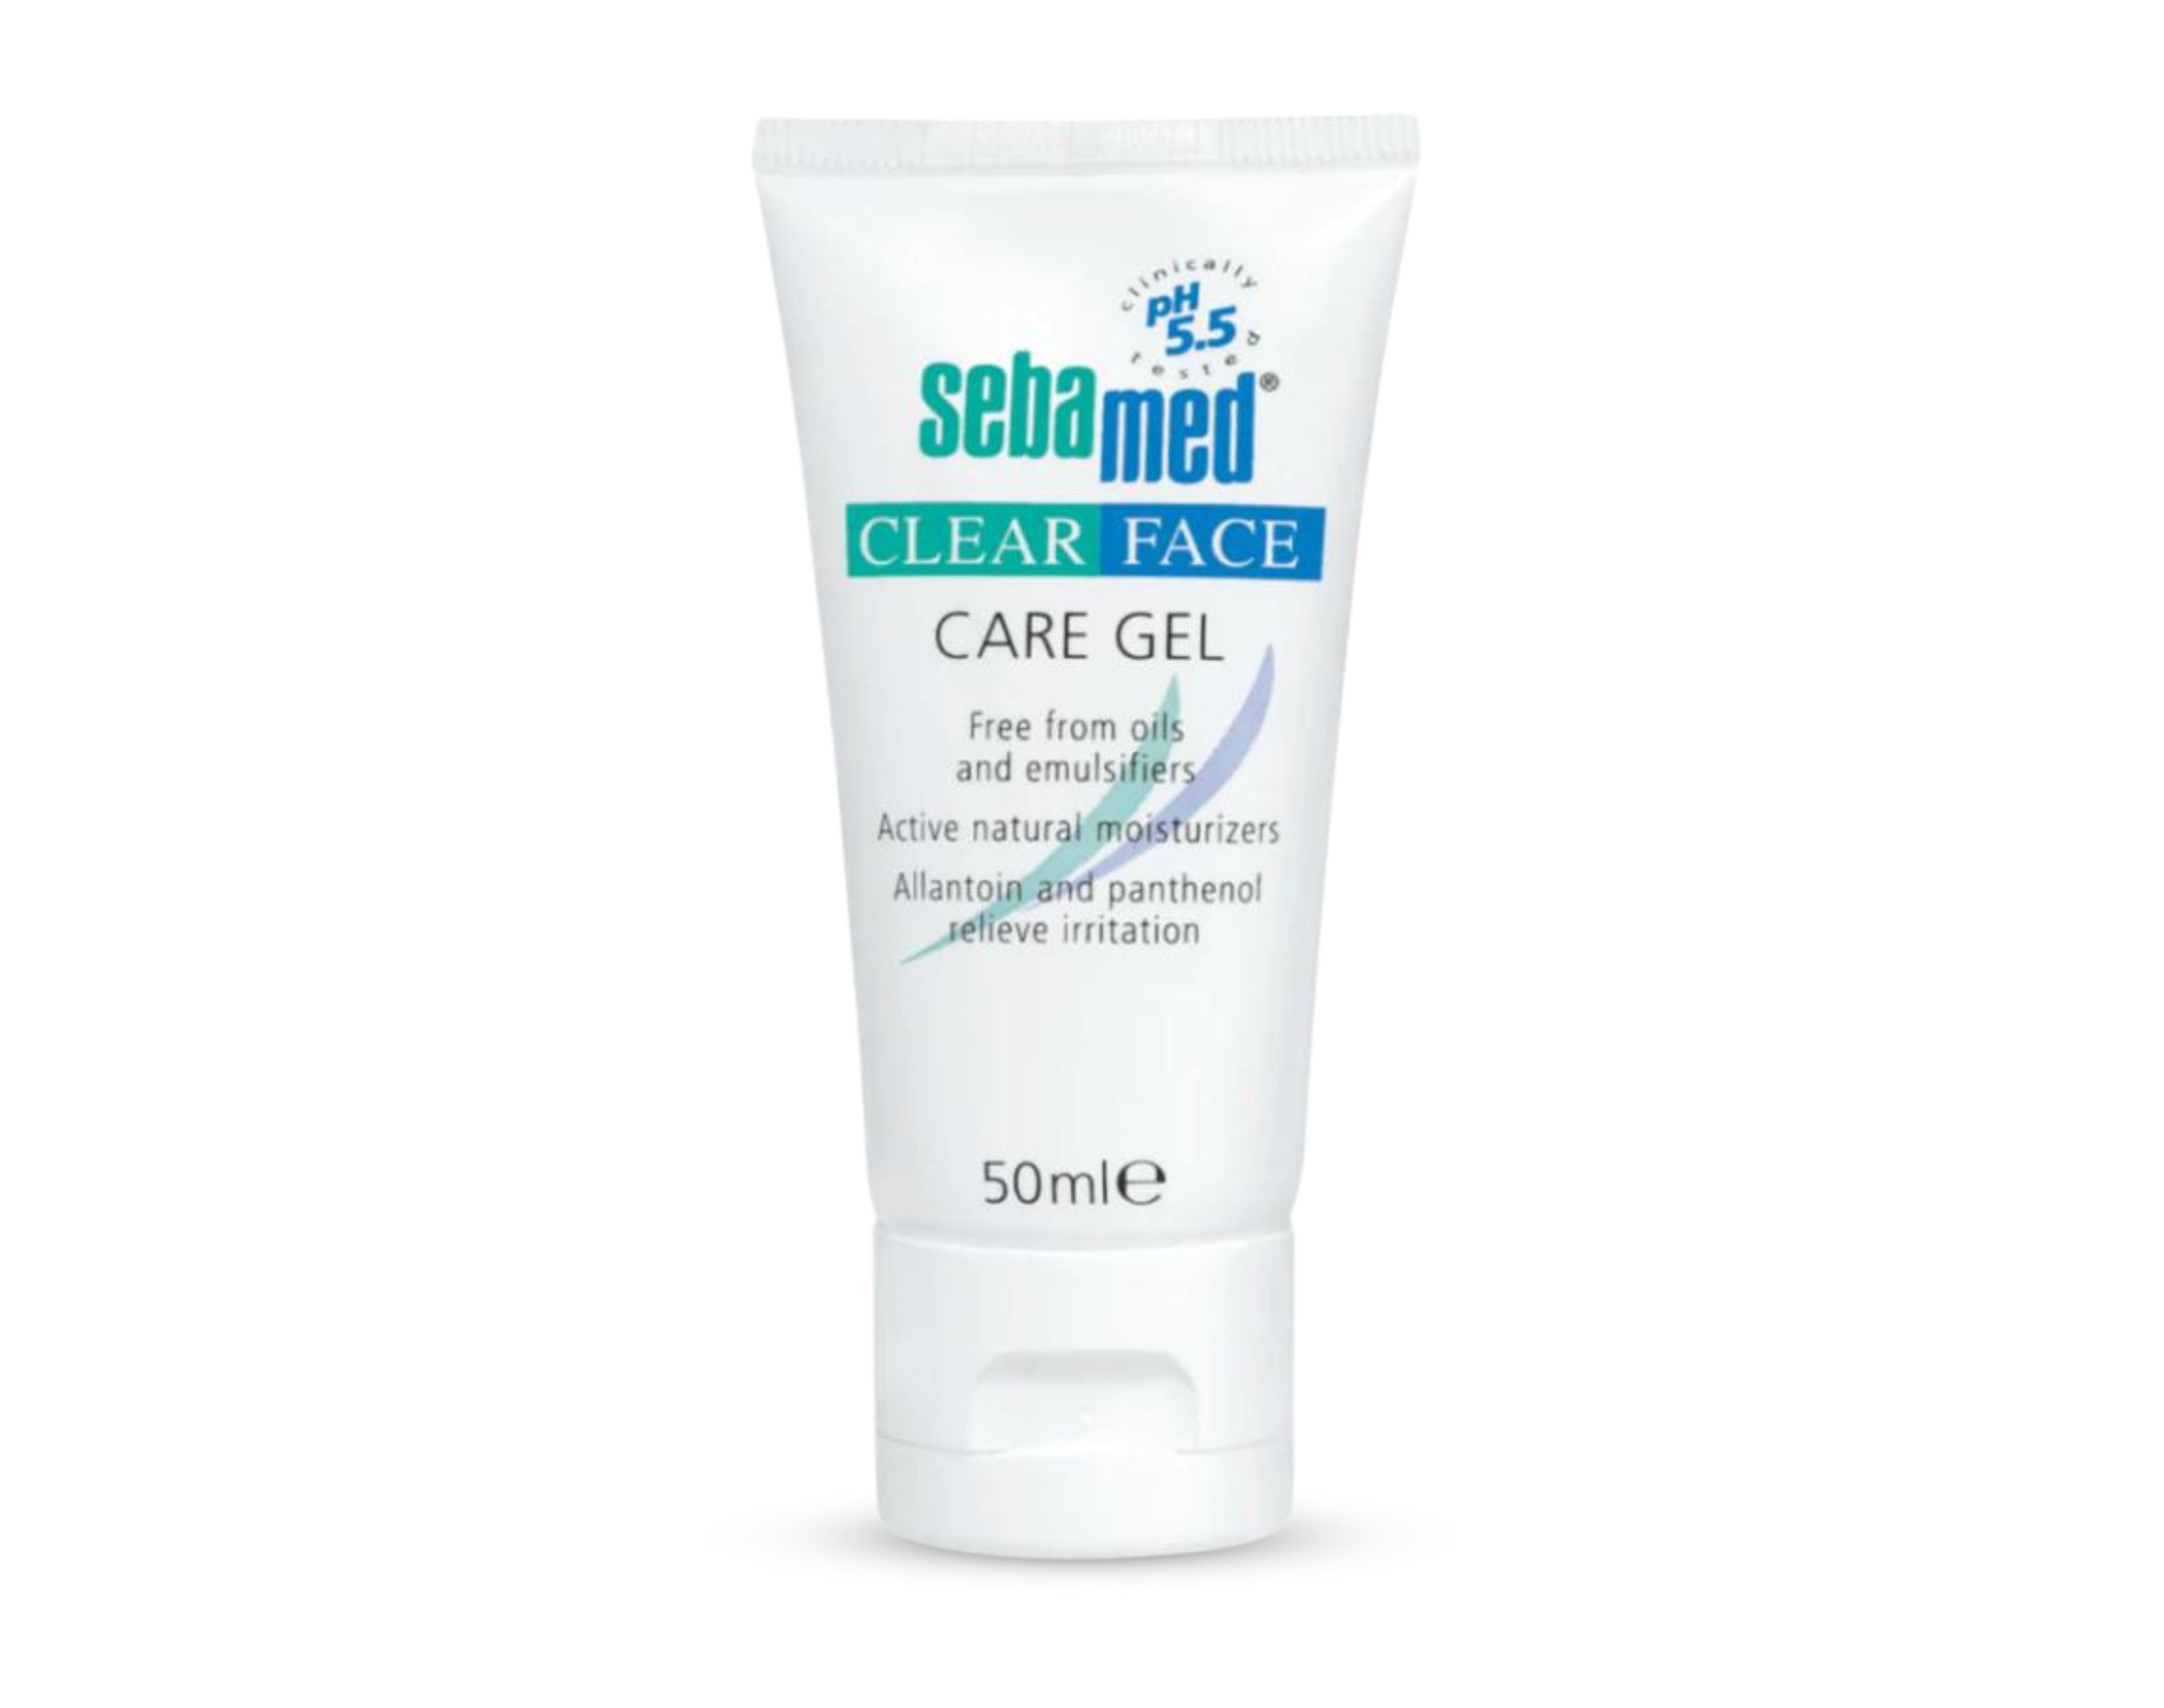 Sebamed Clear Face Care Gel 50ml